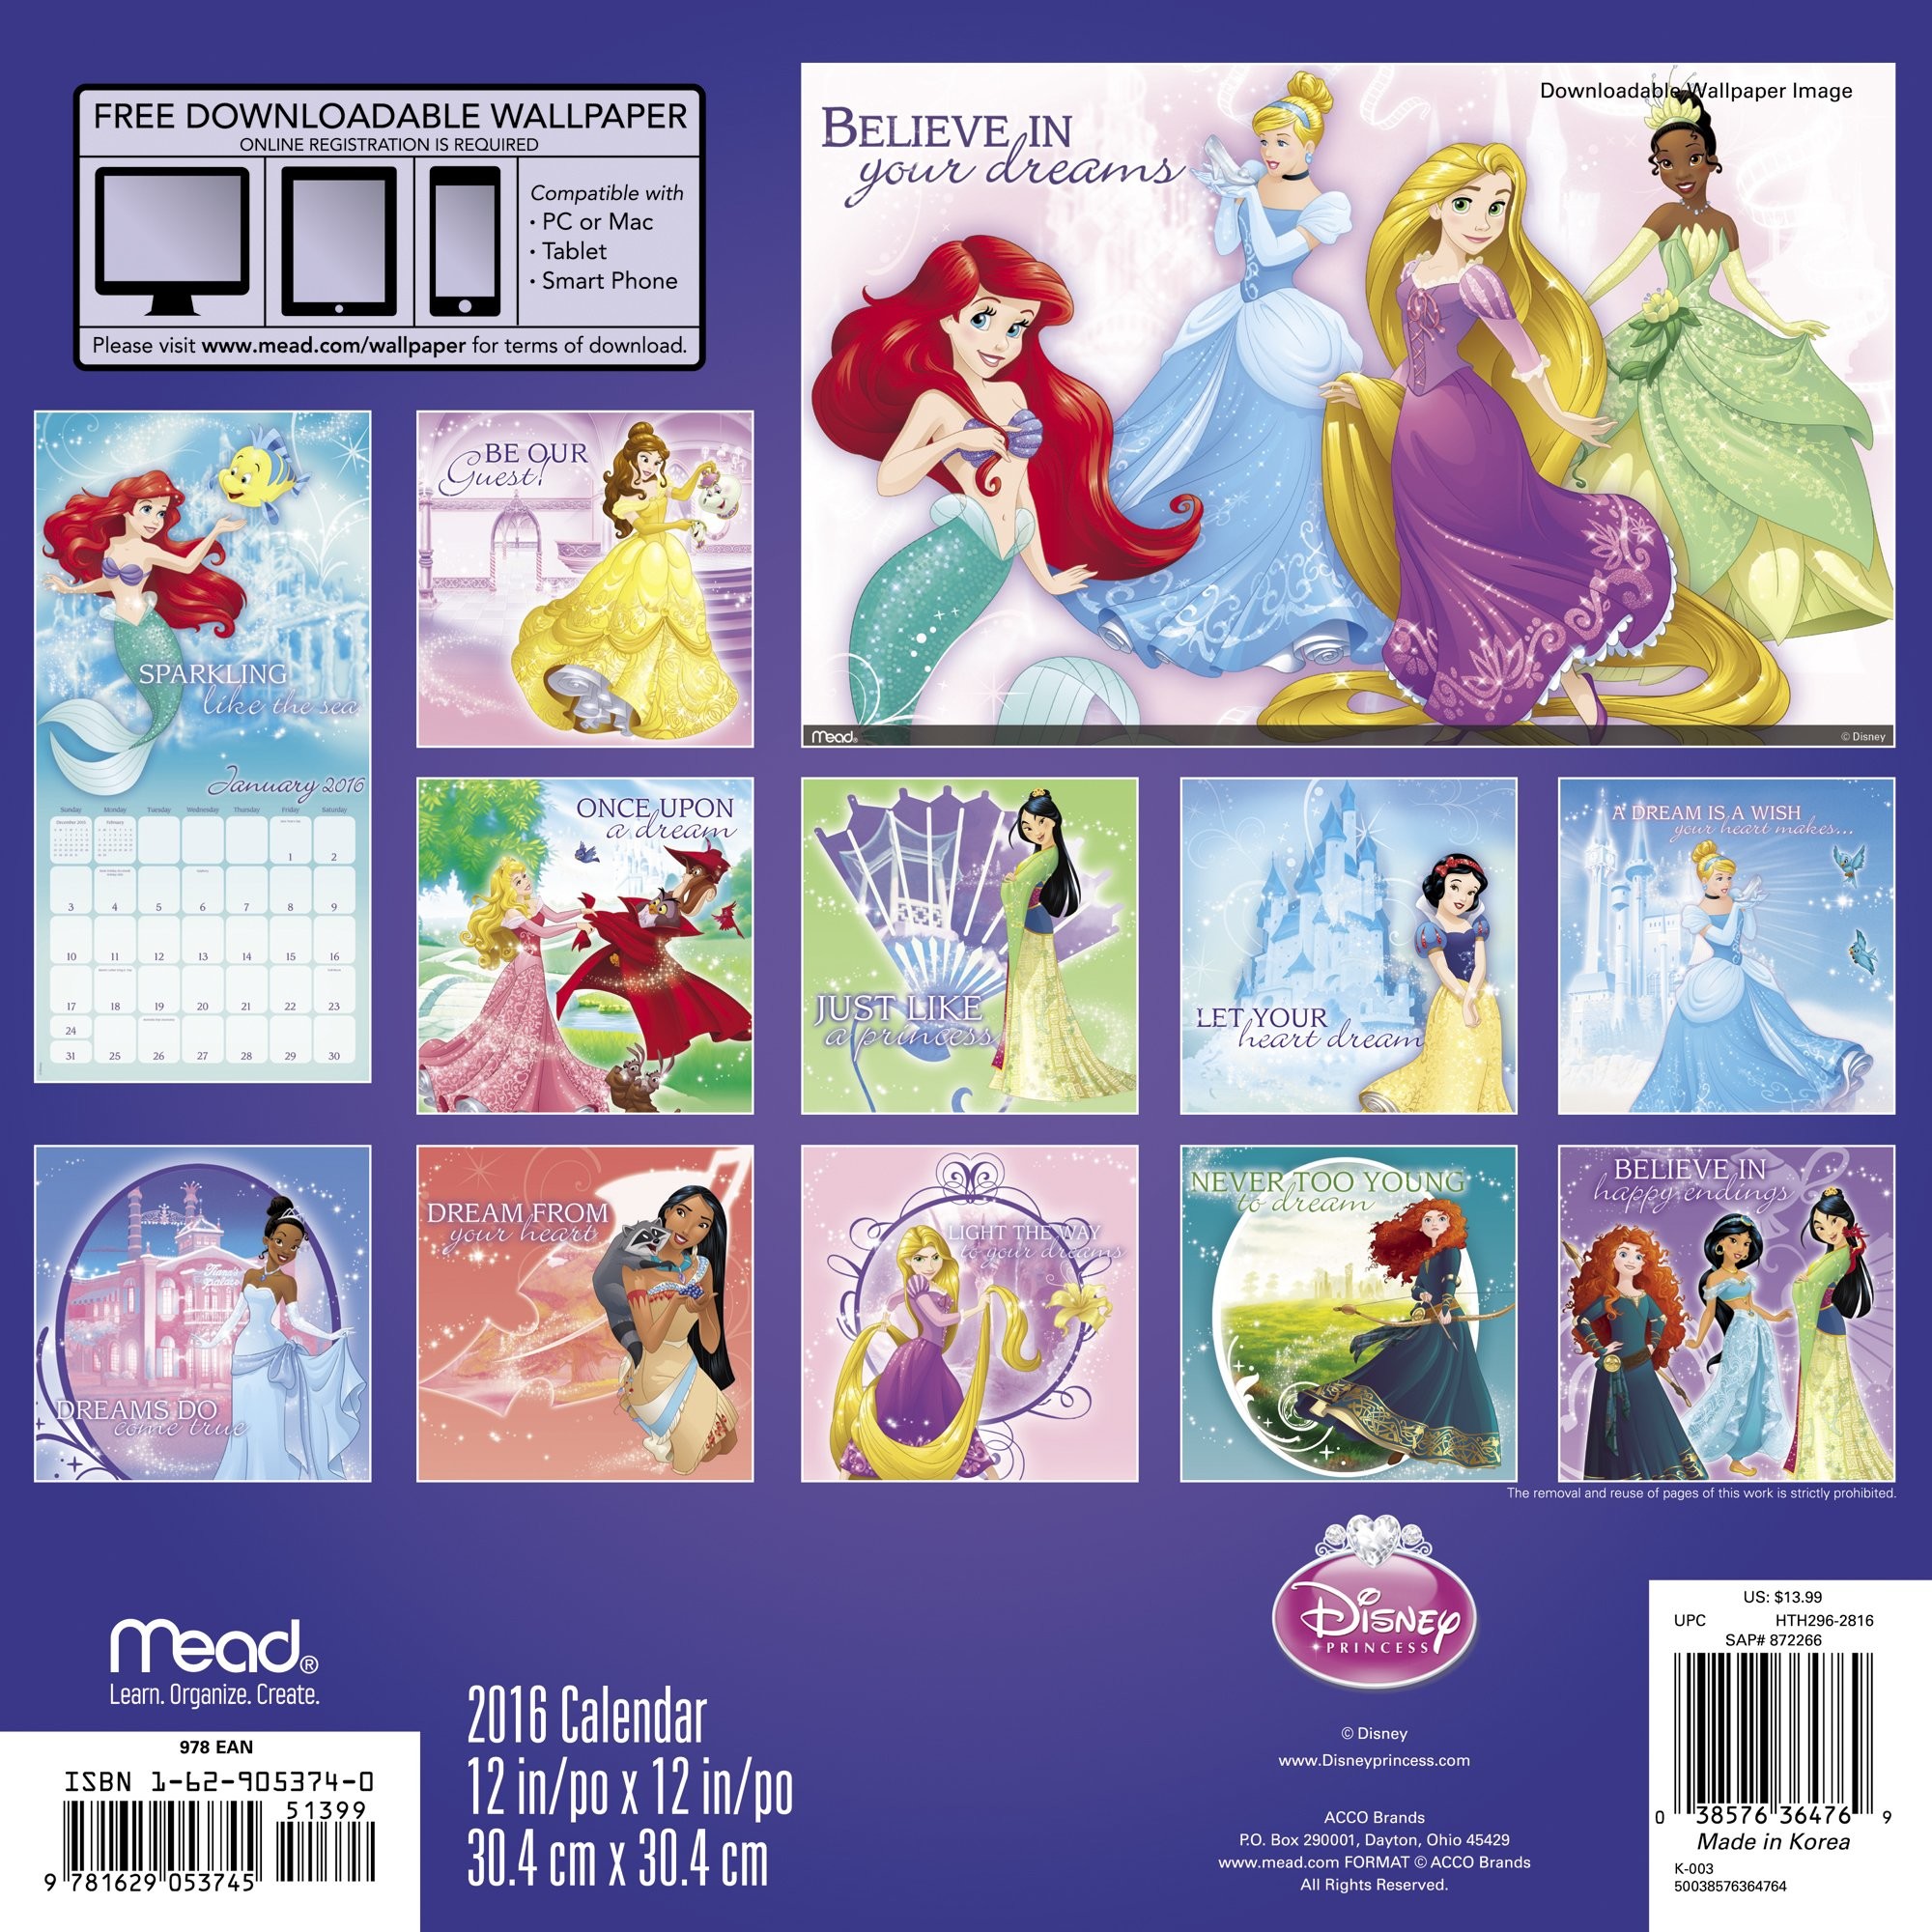 Disney Princess Wall Calendar 2016 Mead 0038576364769 Amazon.com Books